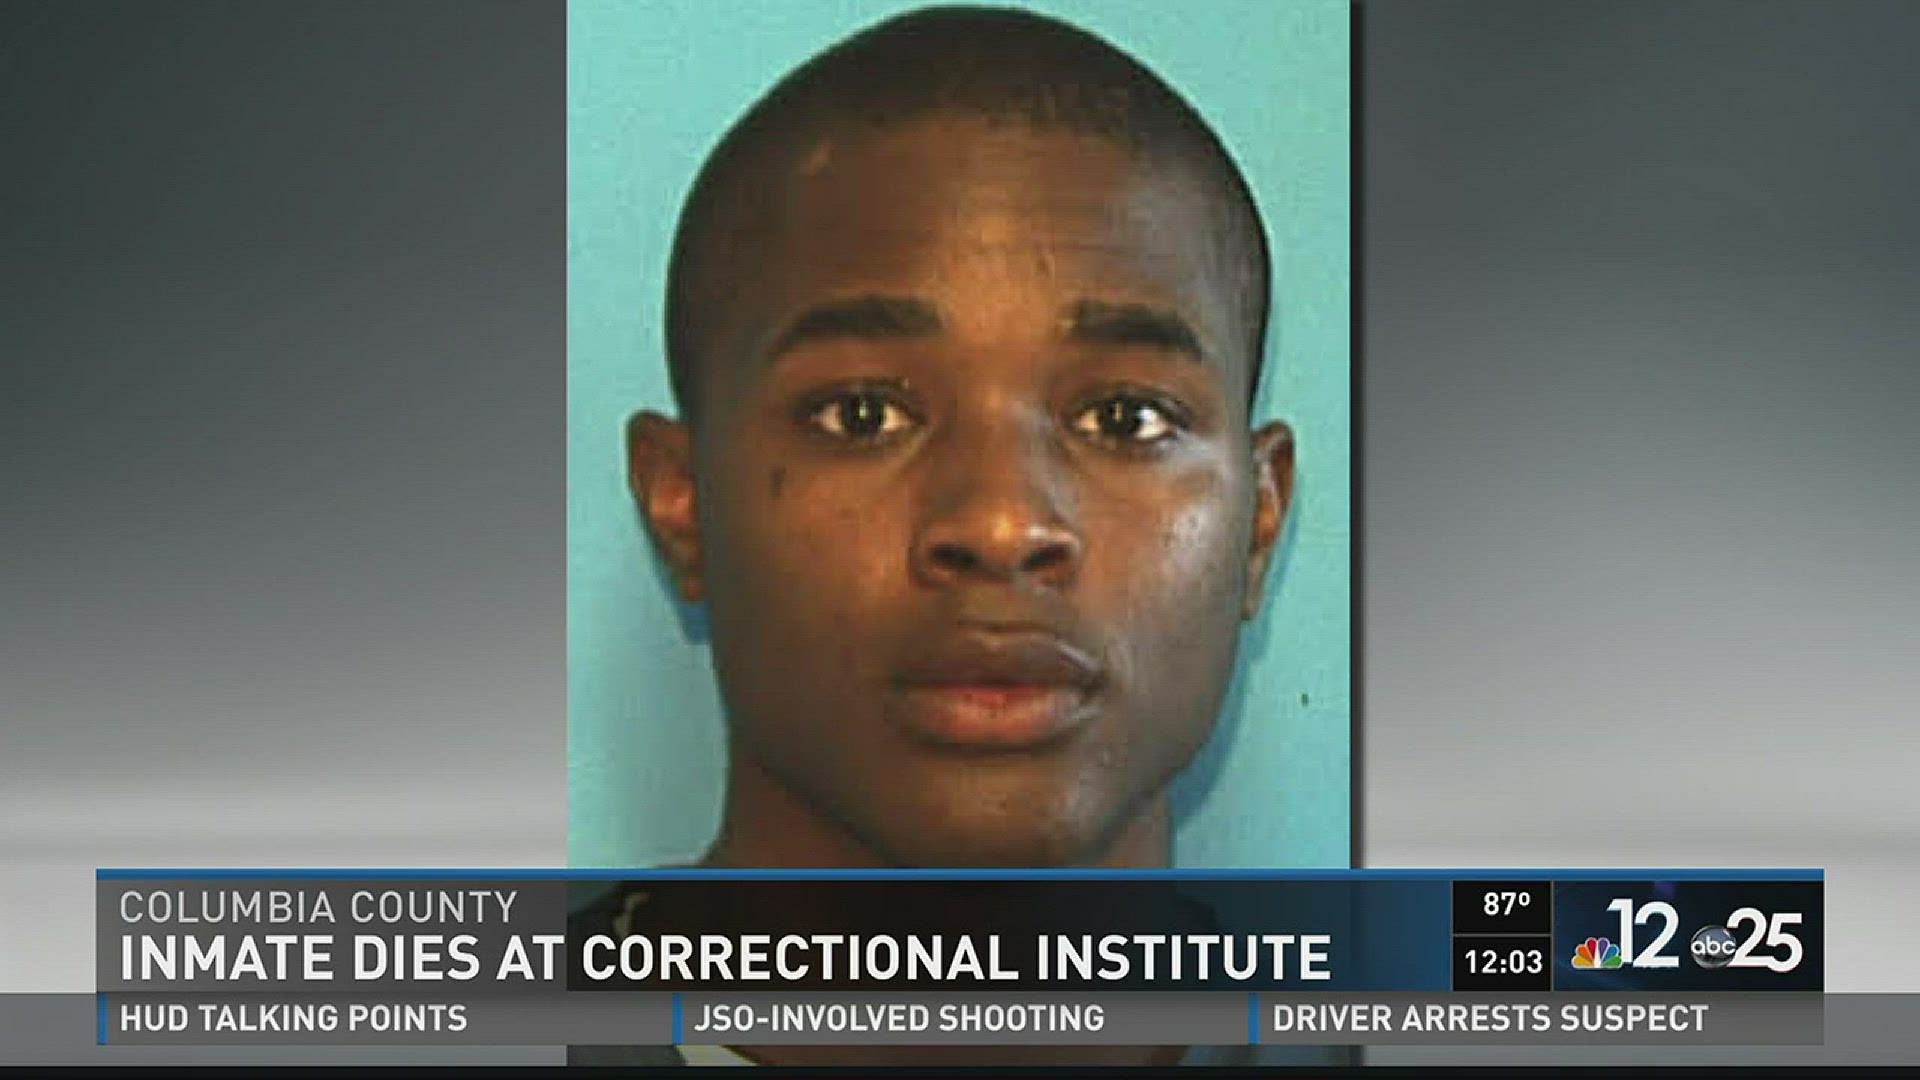 Inmates dies at correctional institute